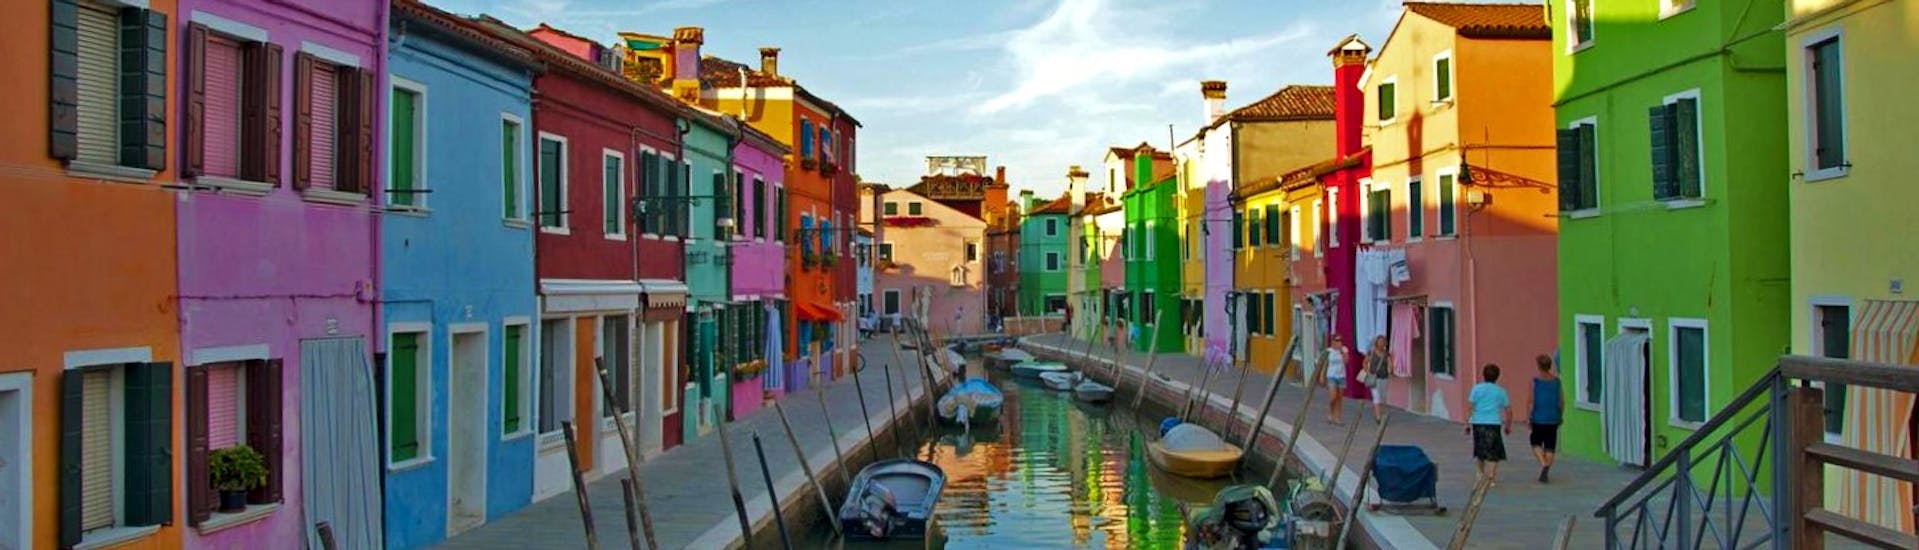 Belle photo des bâtiments caractéristiques de Burano, prise lors d'une Balade en bateau depuis Venise aux îles Murano et Burano avec Park View Viaggi Venice.